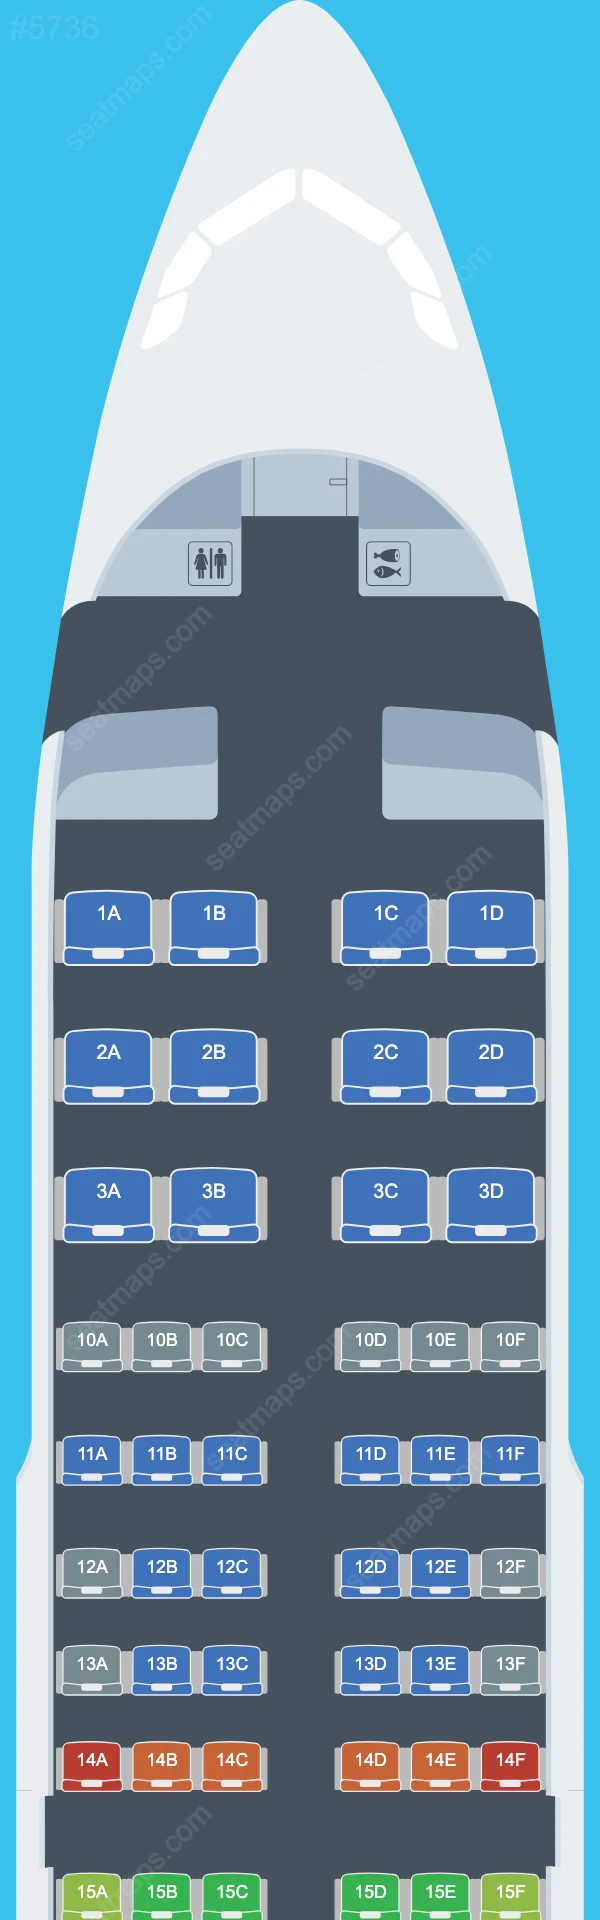 Delta Airbus A319 Plan de Salle A319-100 V.2